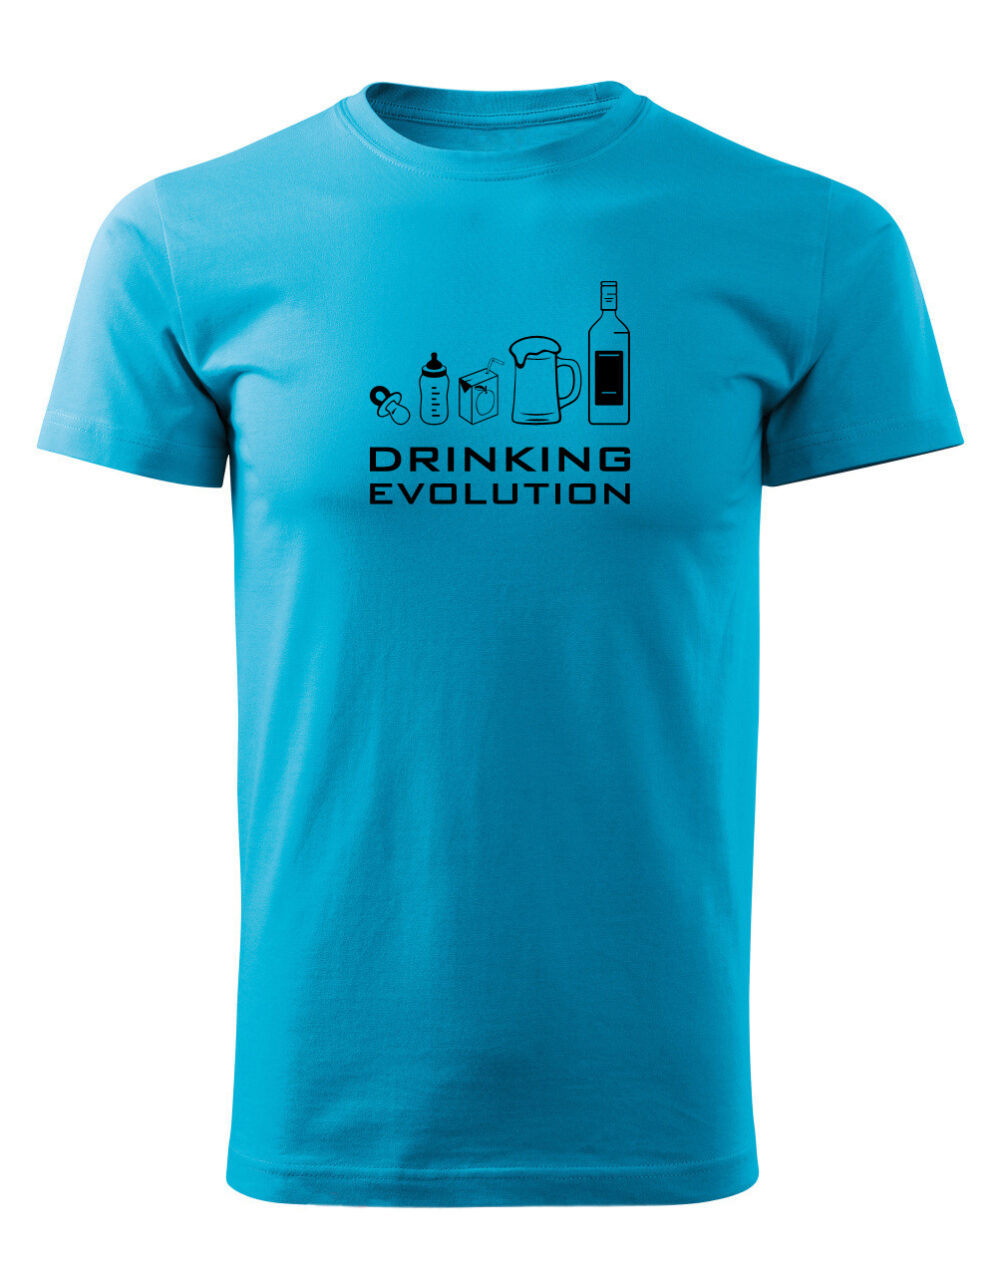 Pánské tričko s potiskem Drinking evolution tyrkysová